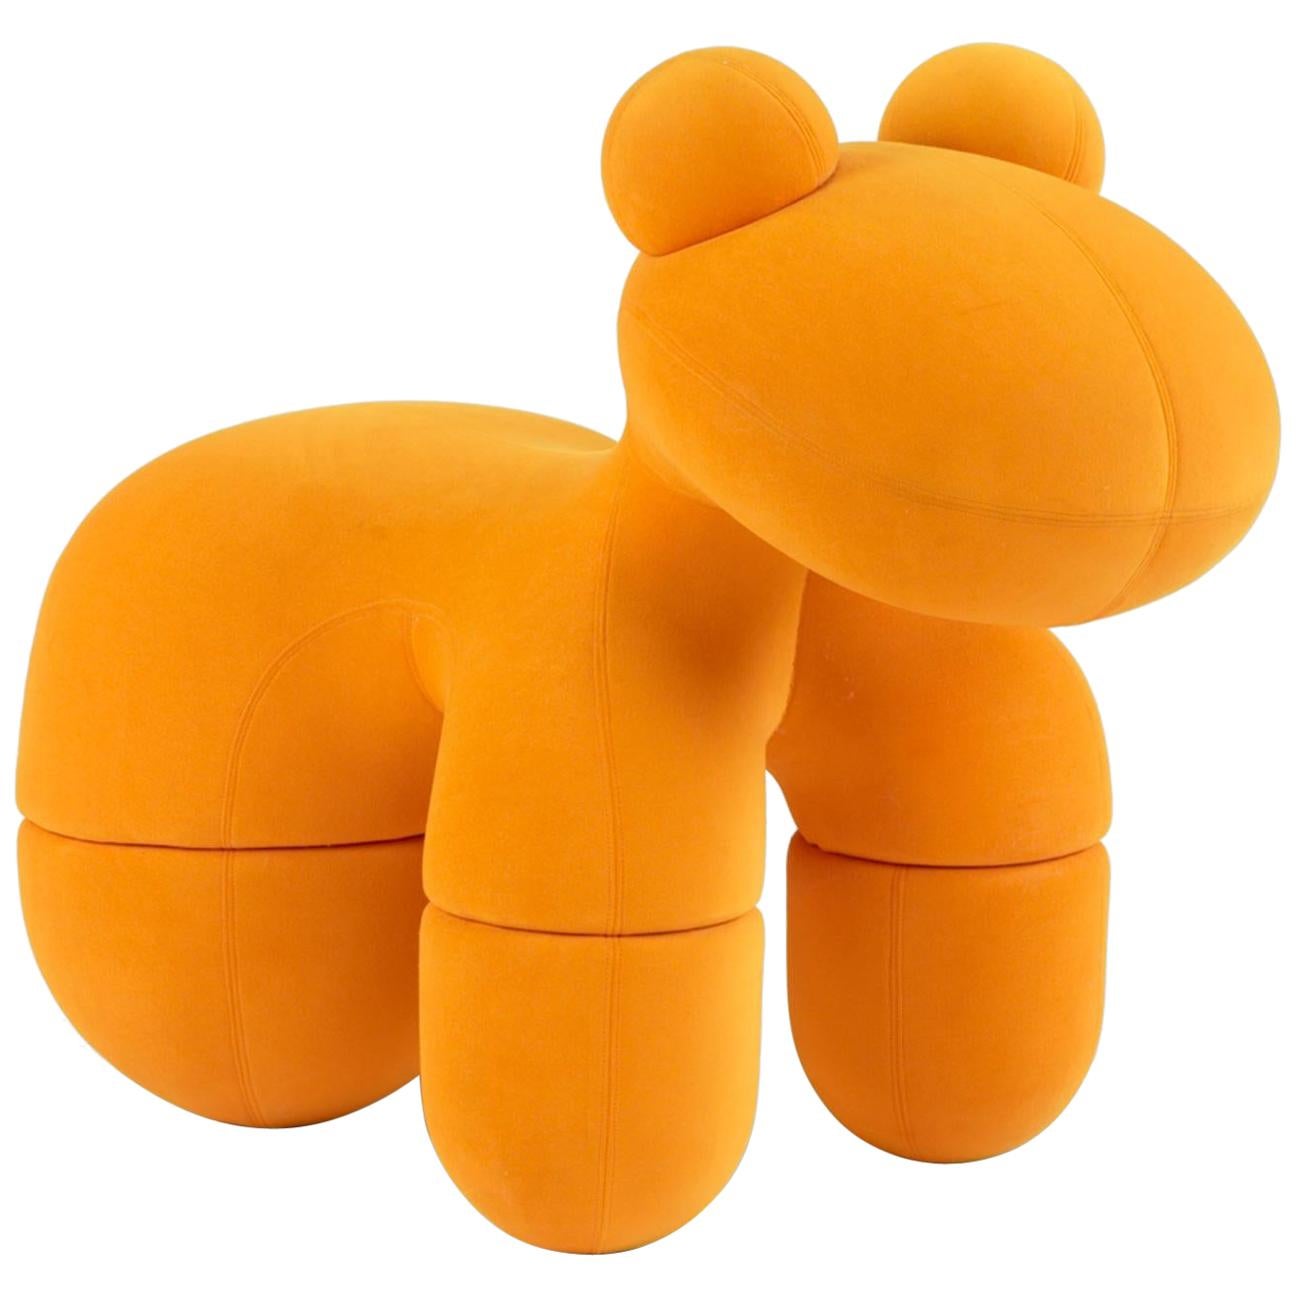 Poney orange emblématique Eero Aarnio en vente